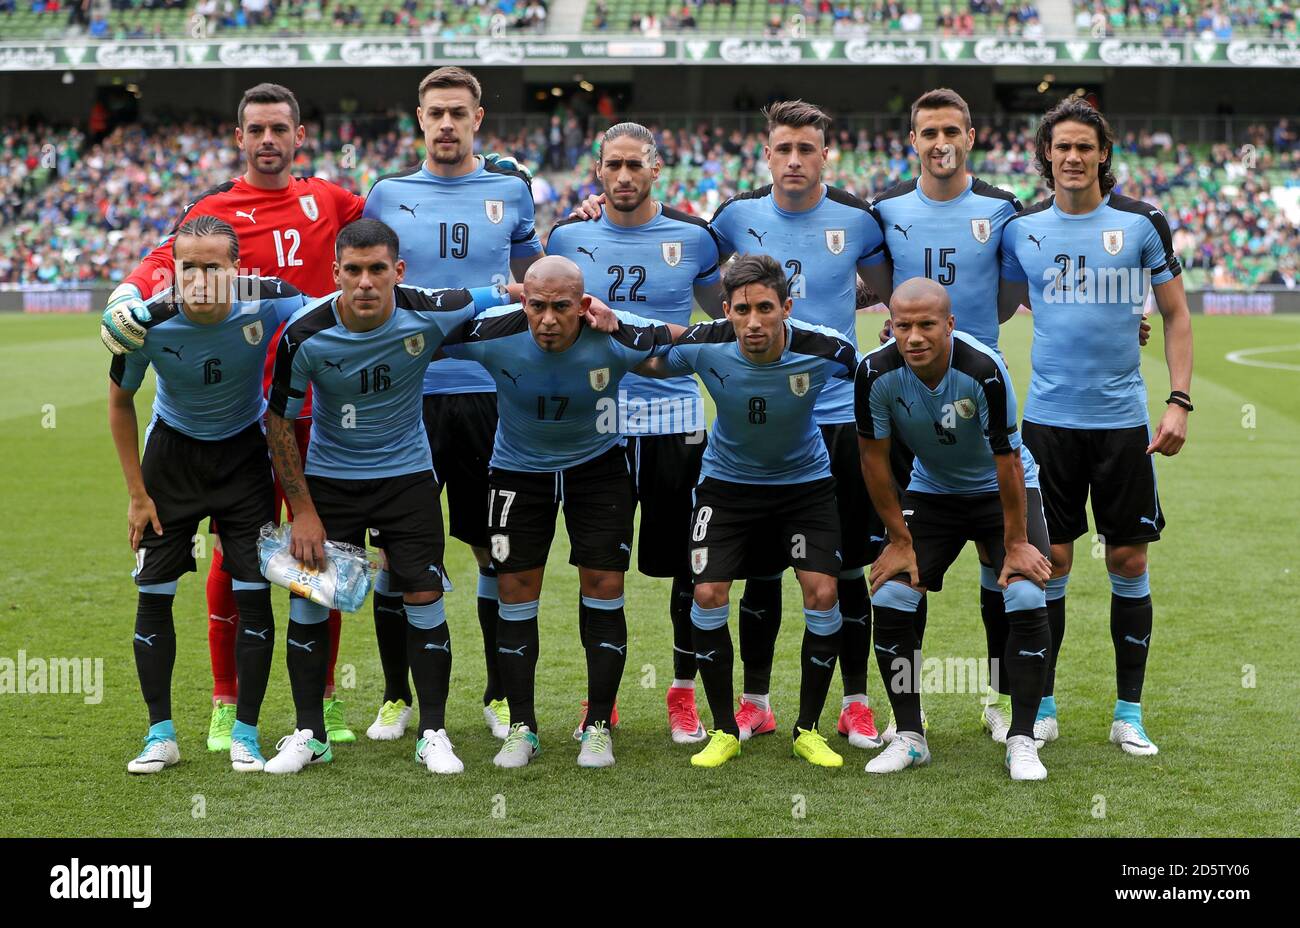 File:Banderín Selección Uruguaya.jpg - Wikimedia Commons